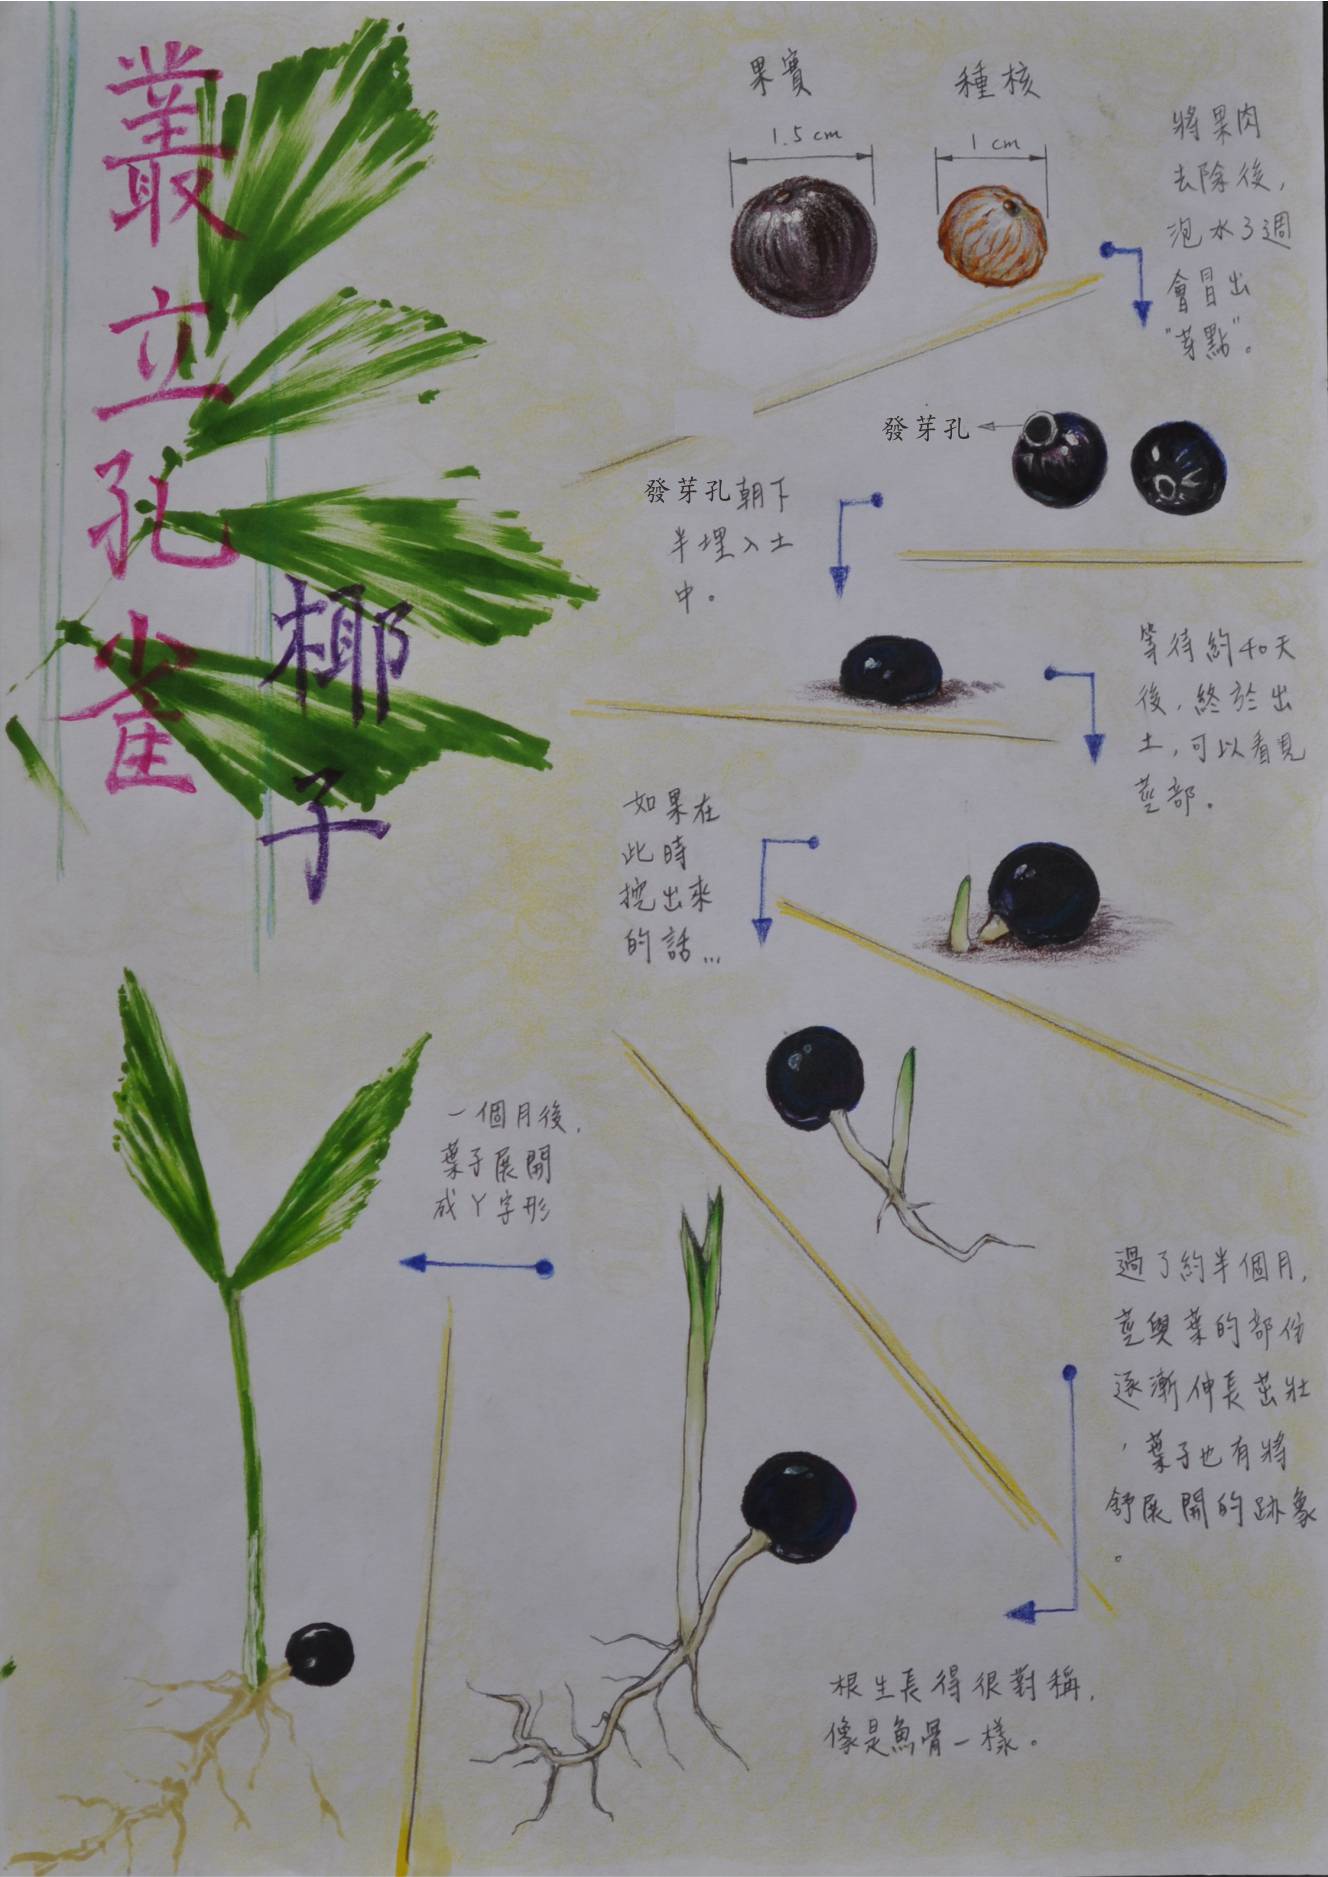 单子叶植物发芽解说图绘制作业